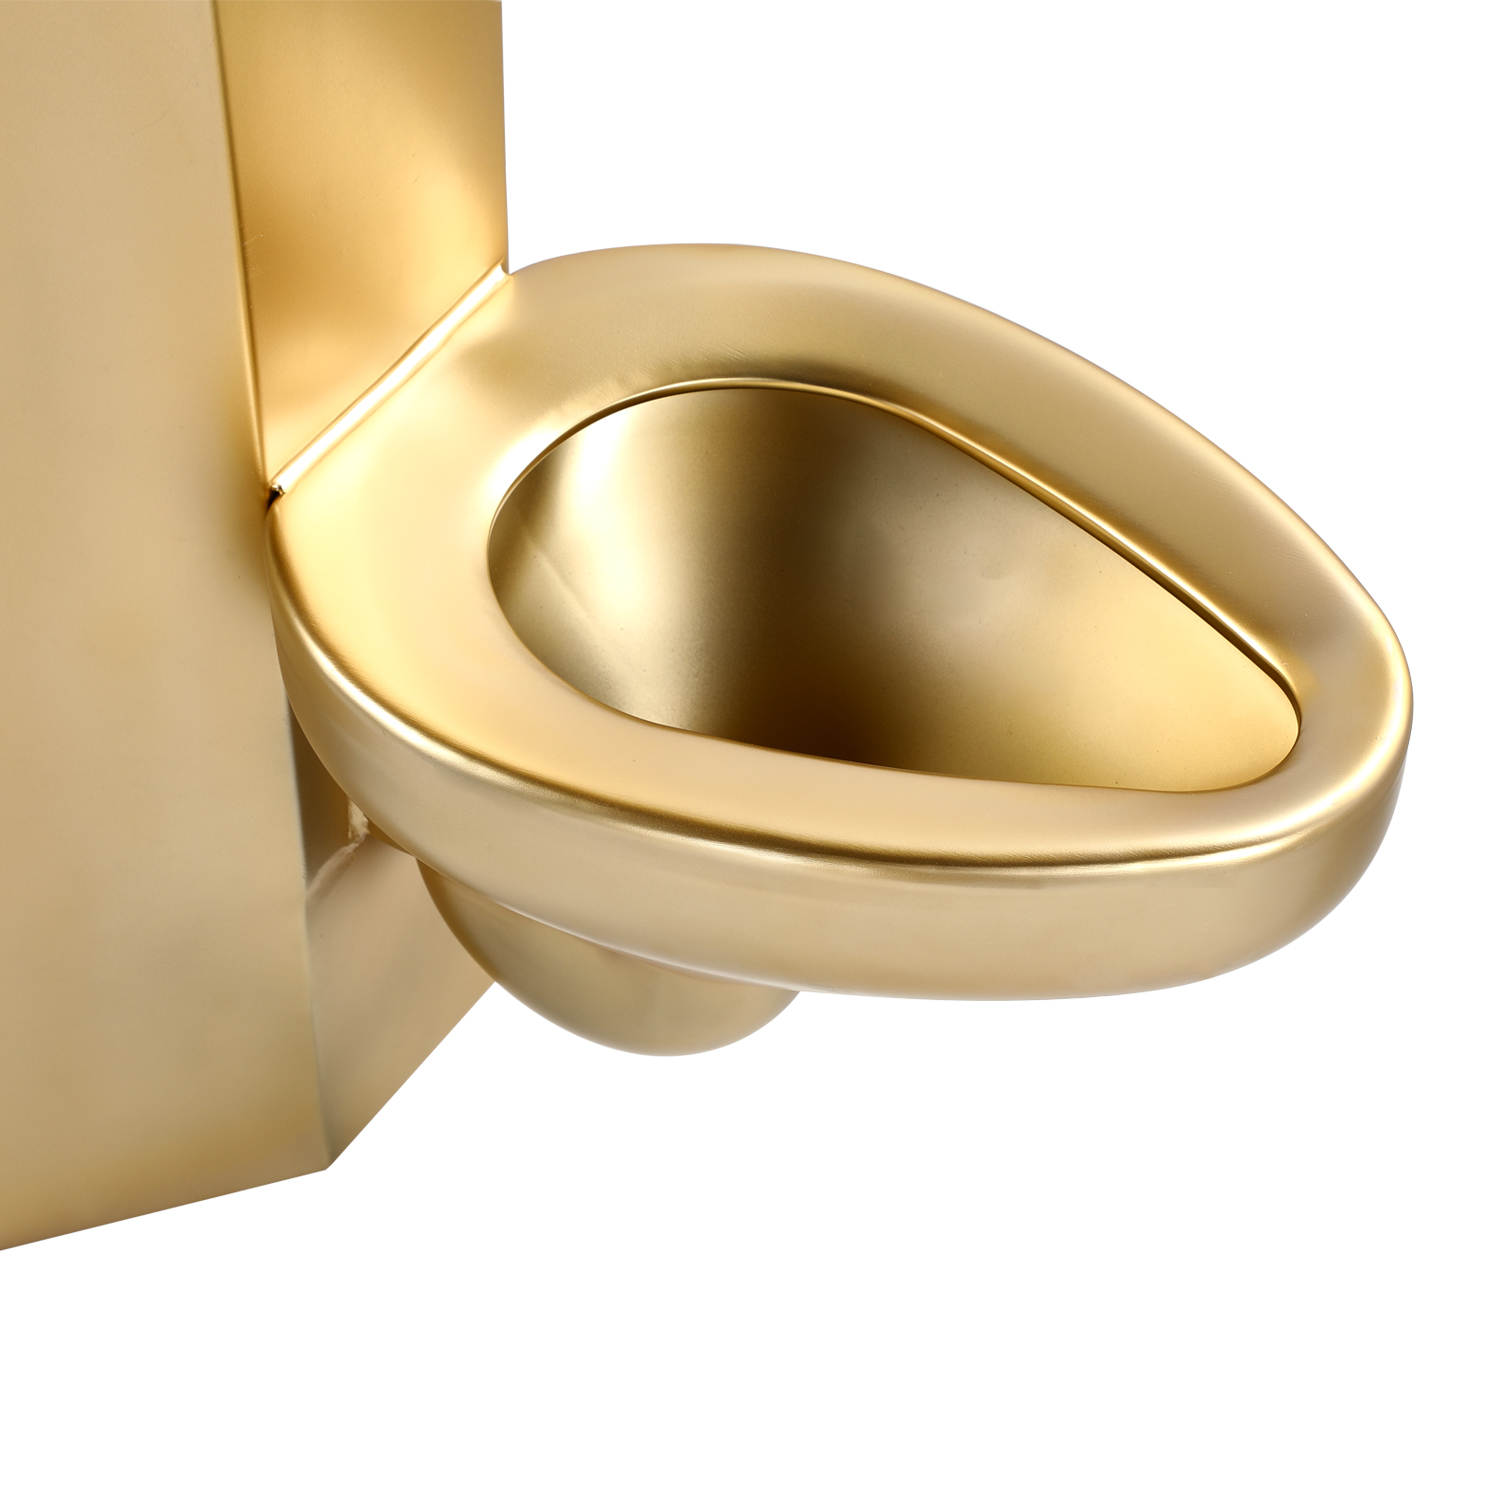 WC combinato in acciaio inossidabile dorato